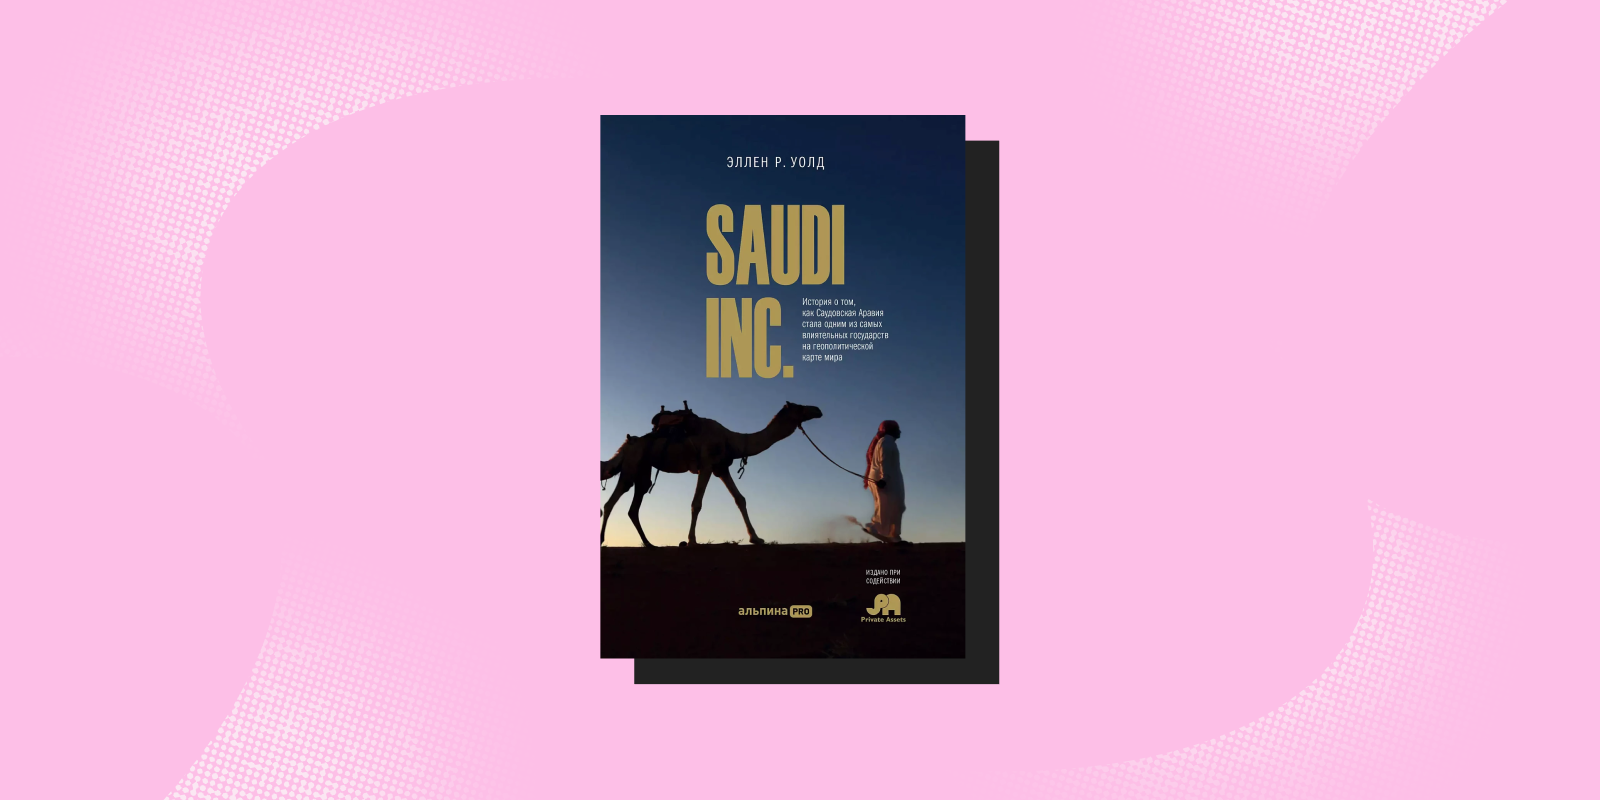 «SAUDI INC. История о том, как Саудовская Аравия стала одним из самых влиятельных государств на геополитической карте мира», Эллен Р. Уолд